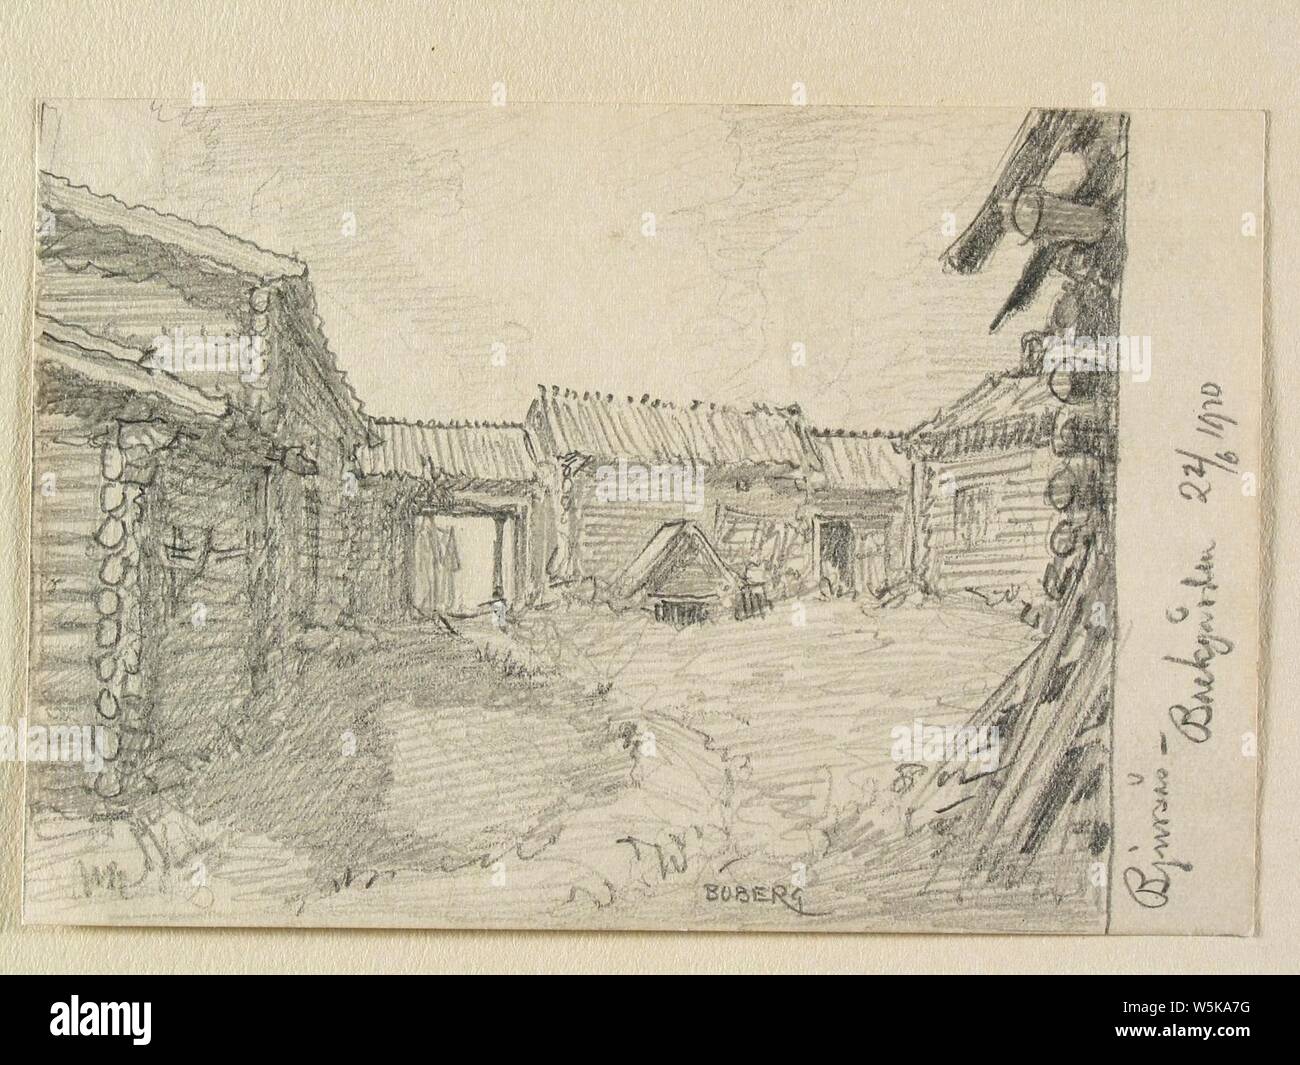 Dalarna, Bjursås sn., Backgården. Teckning av Ferdinand Boberg - Nordiska museet - NMA.0088072. Stock Photo